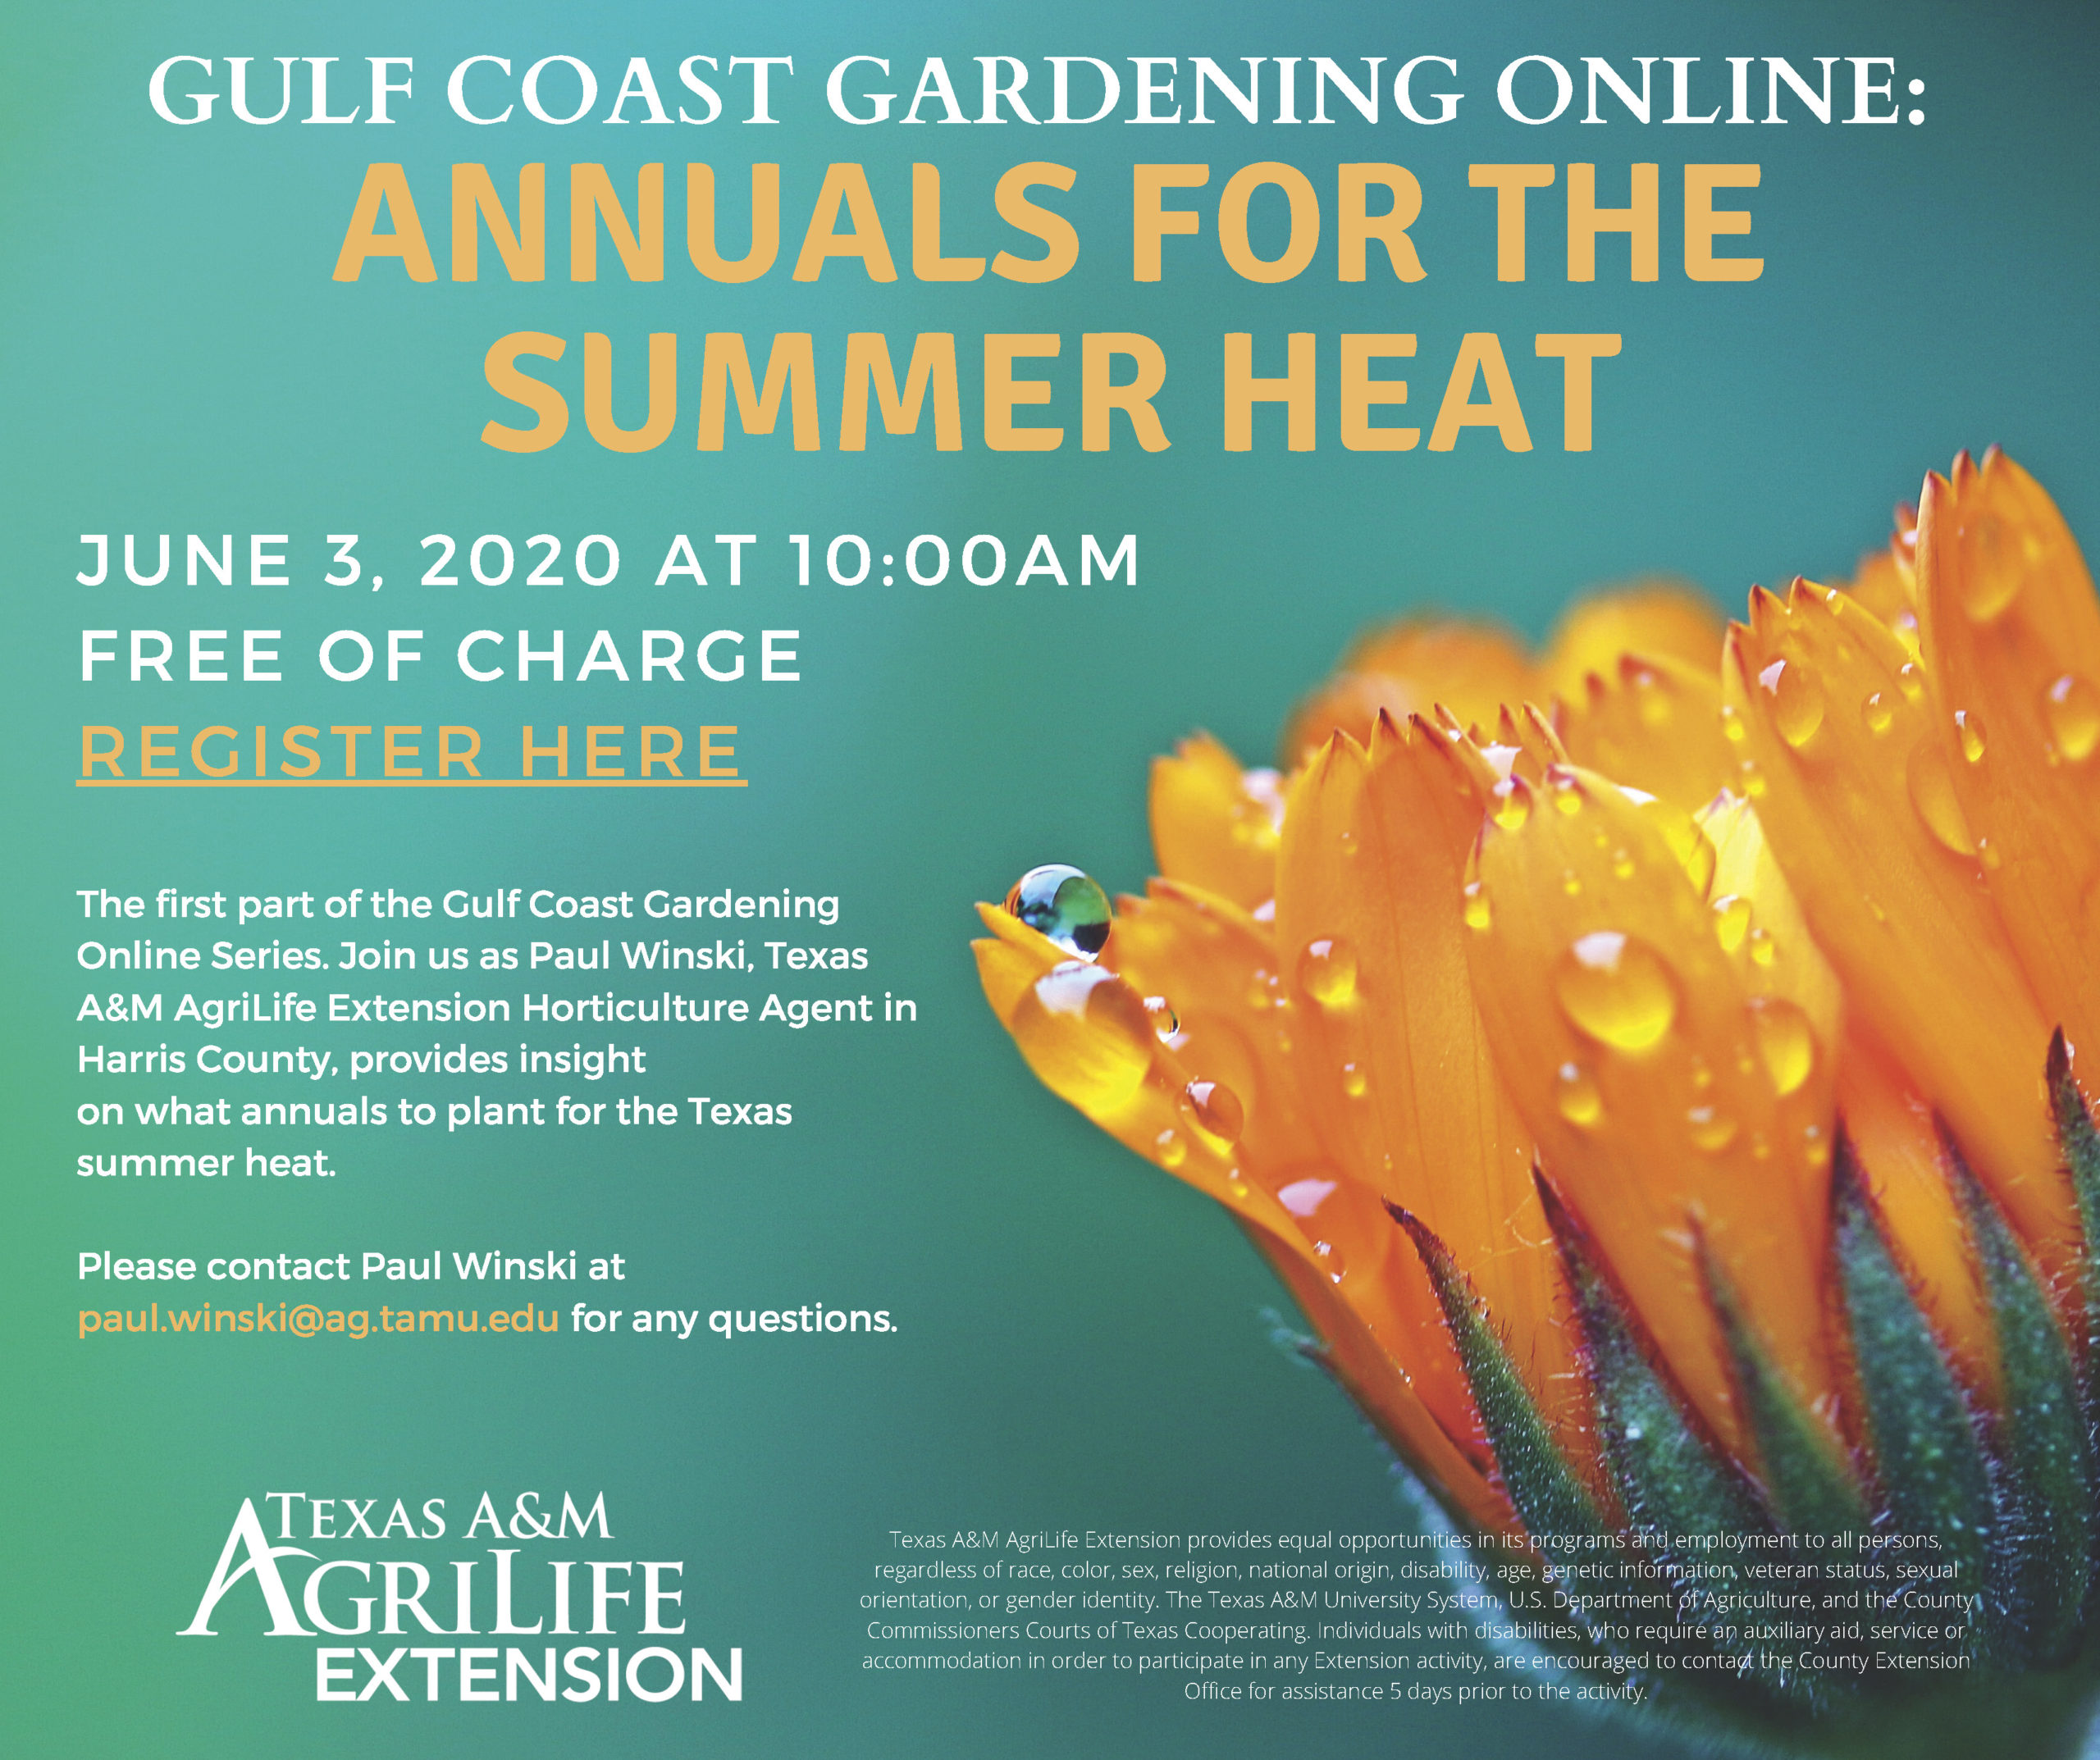 Gulf Coast Gardening Online